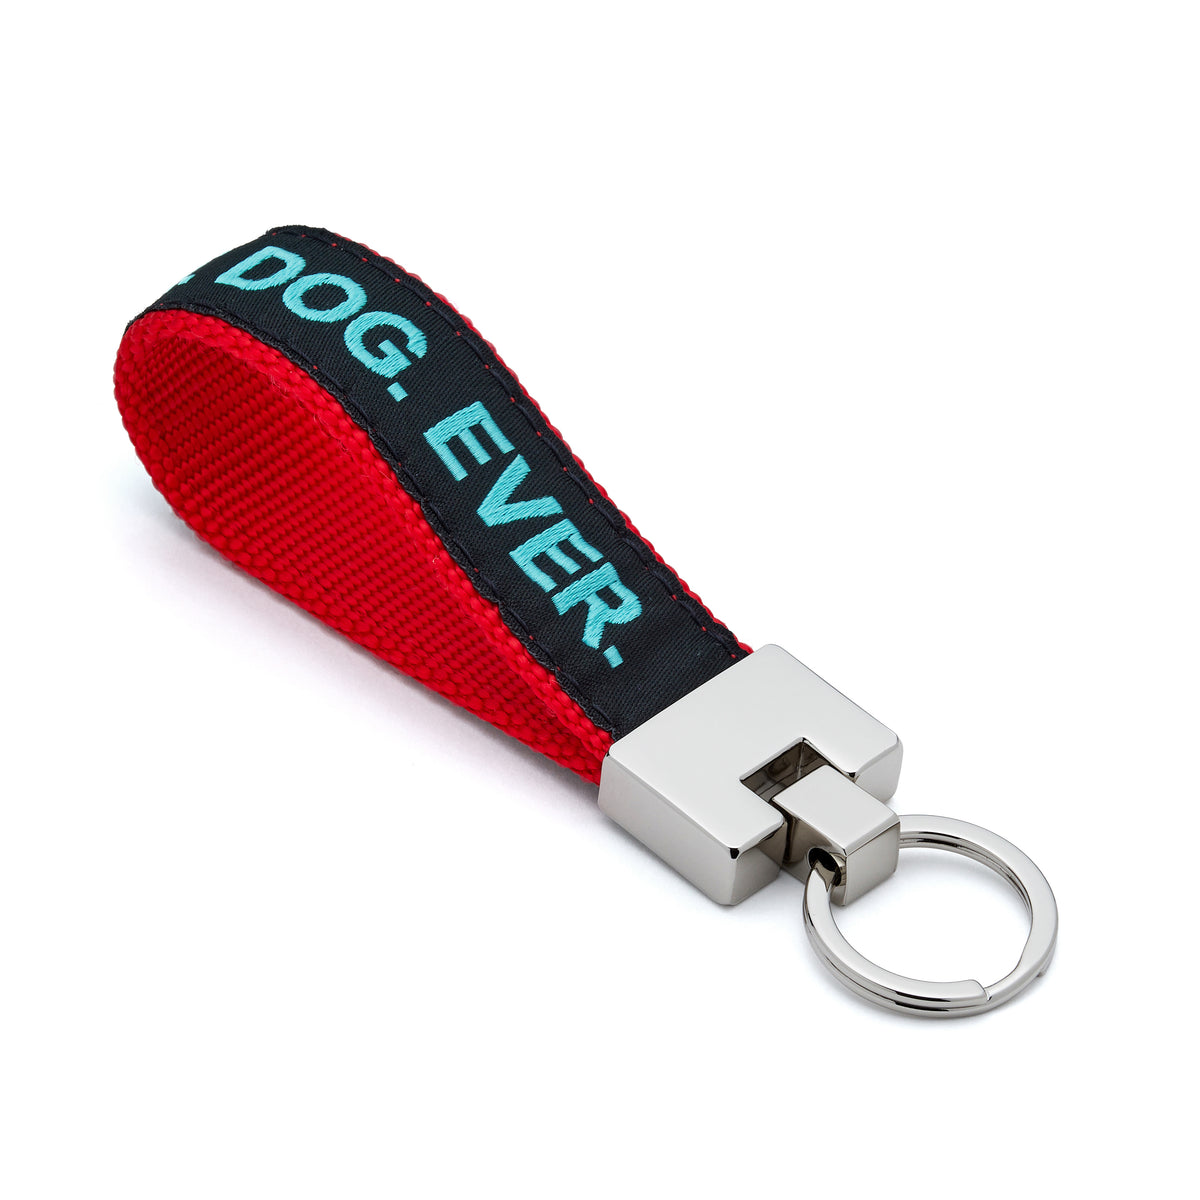 Dog key ring